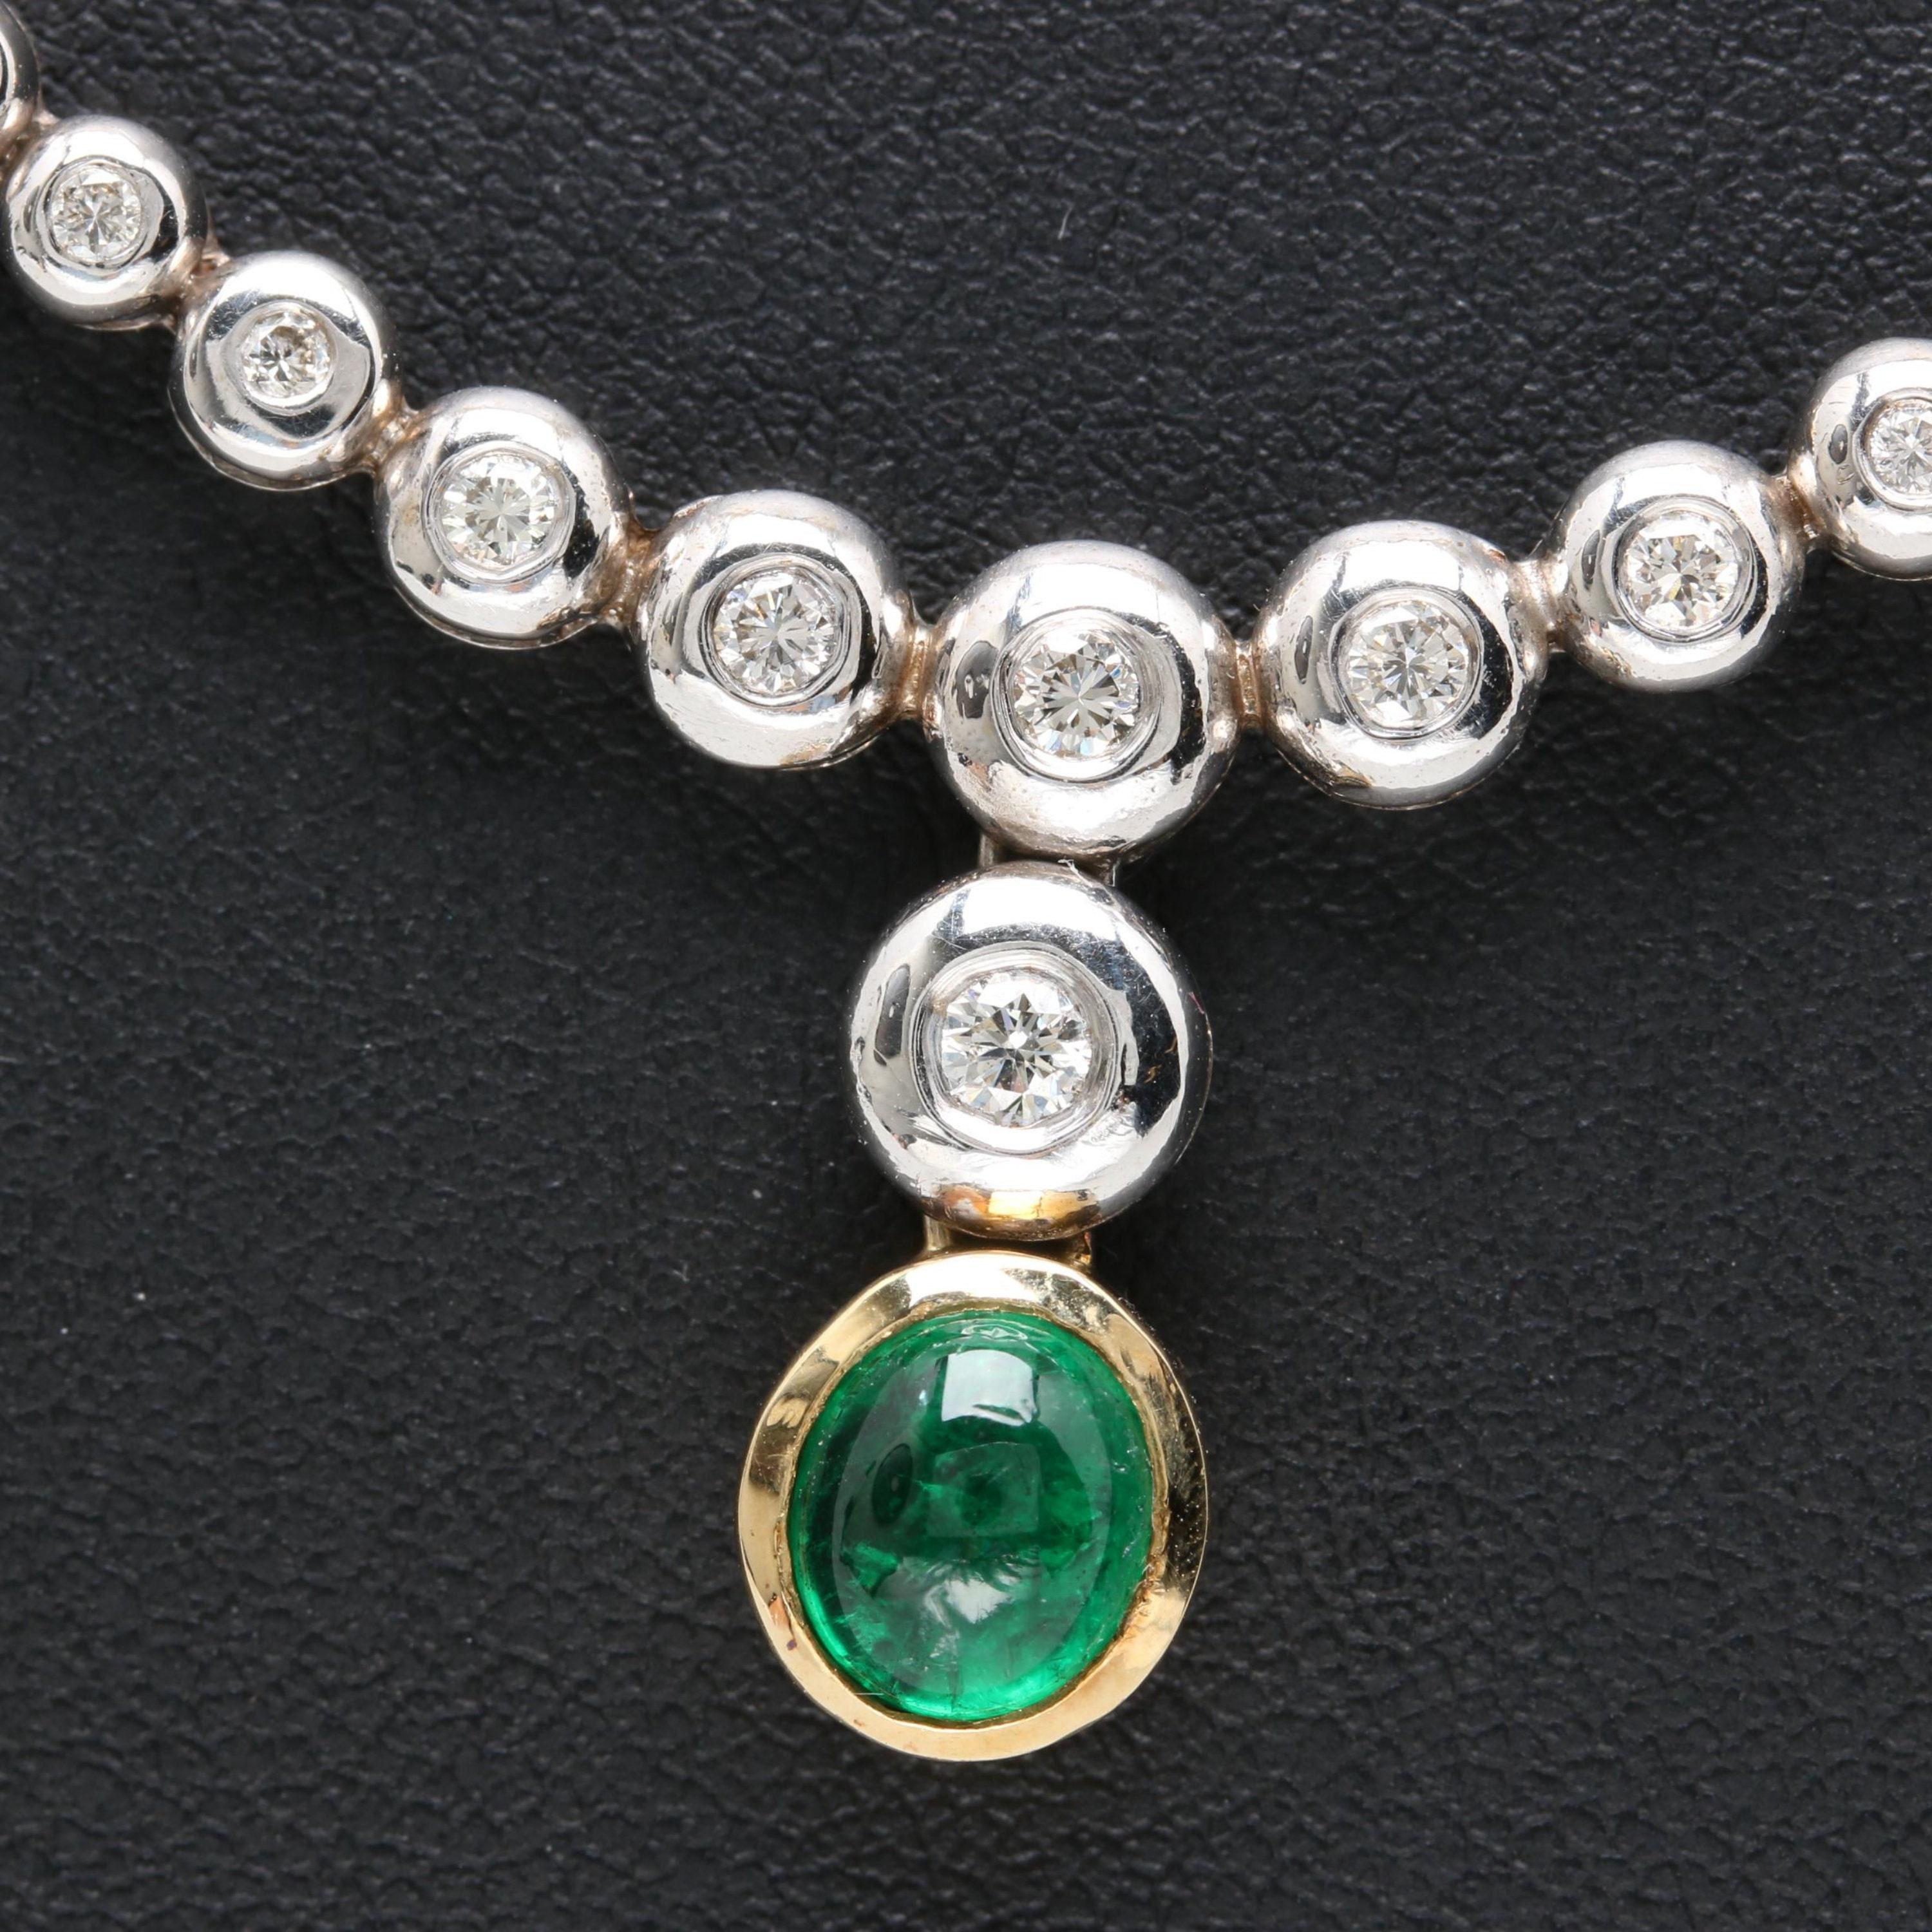 nallapusalu with diamond pendant